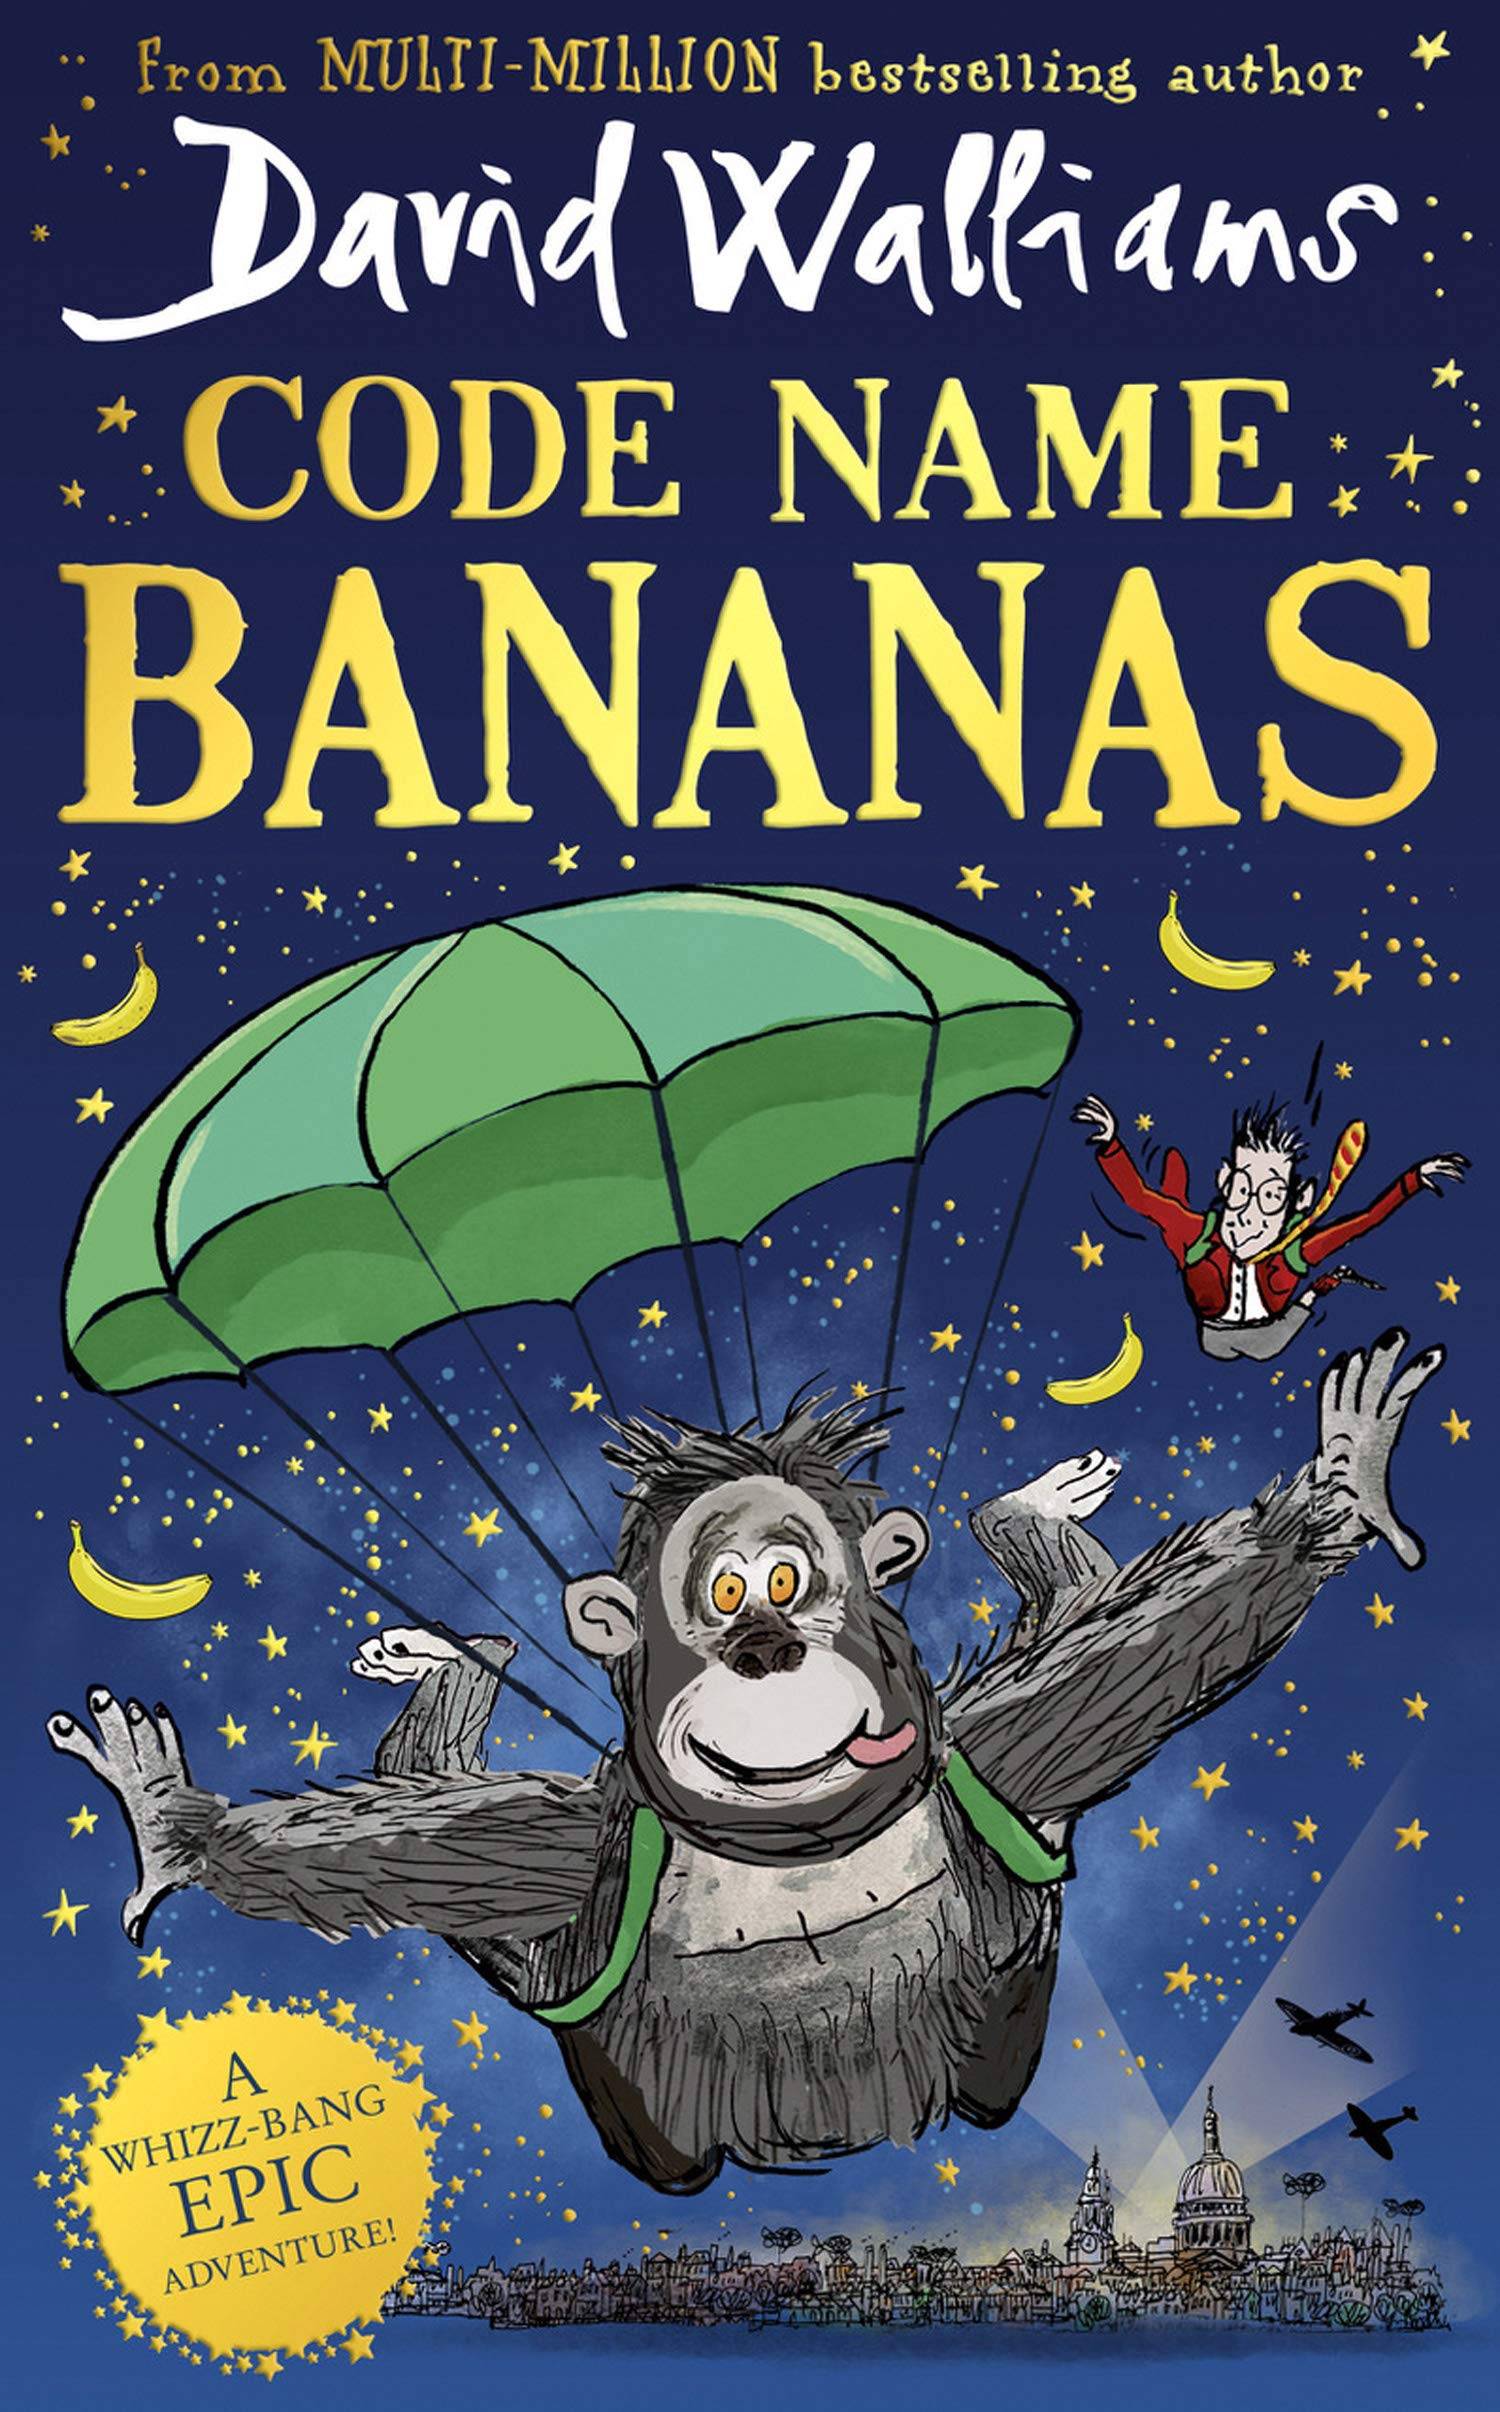 IMG : Code name Bananas